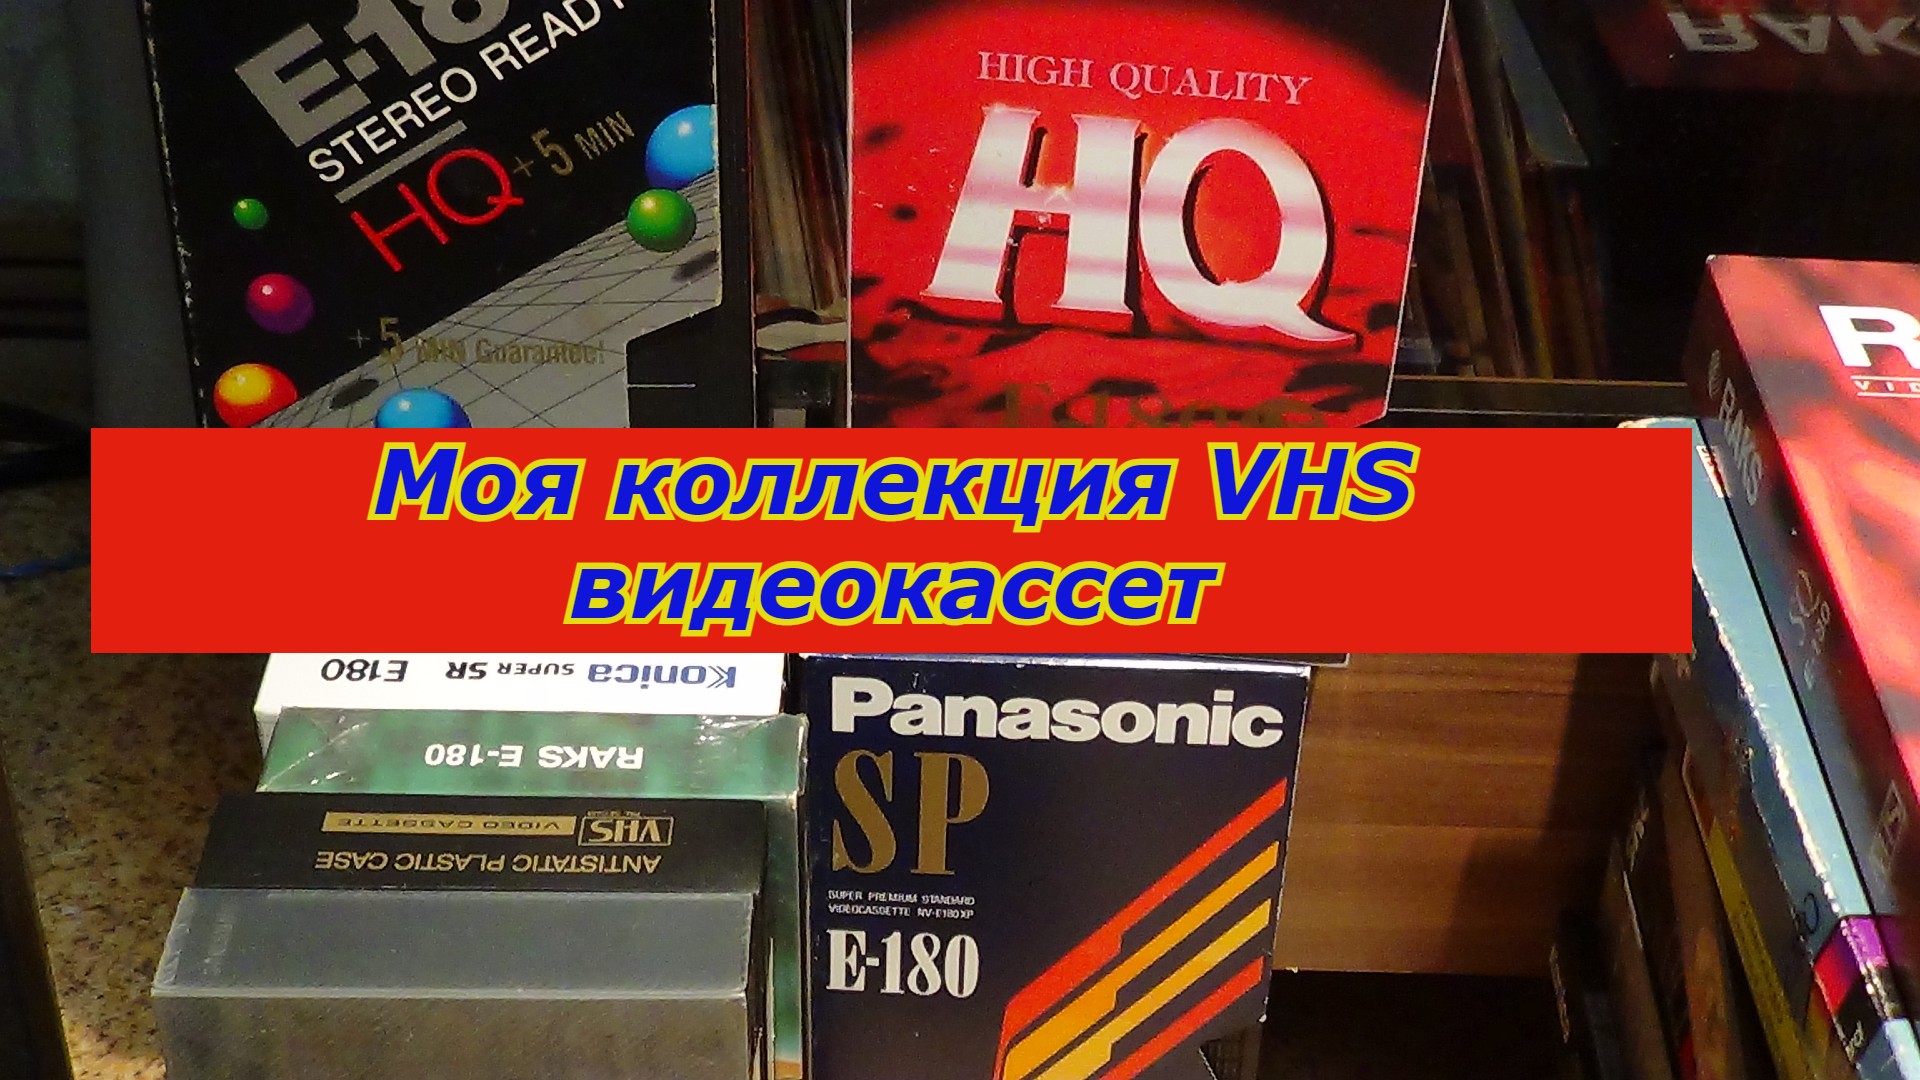 Видеокассеты. Наклейки на видеокассеты VHS. Коллекция видеокассет VHS 90. Видеокассета VHS Maxwell. Программа телеканала vhs